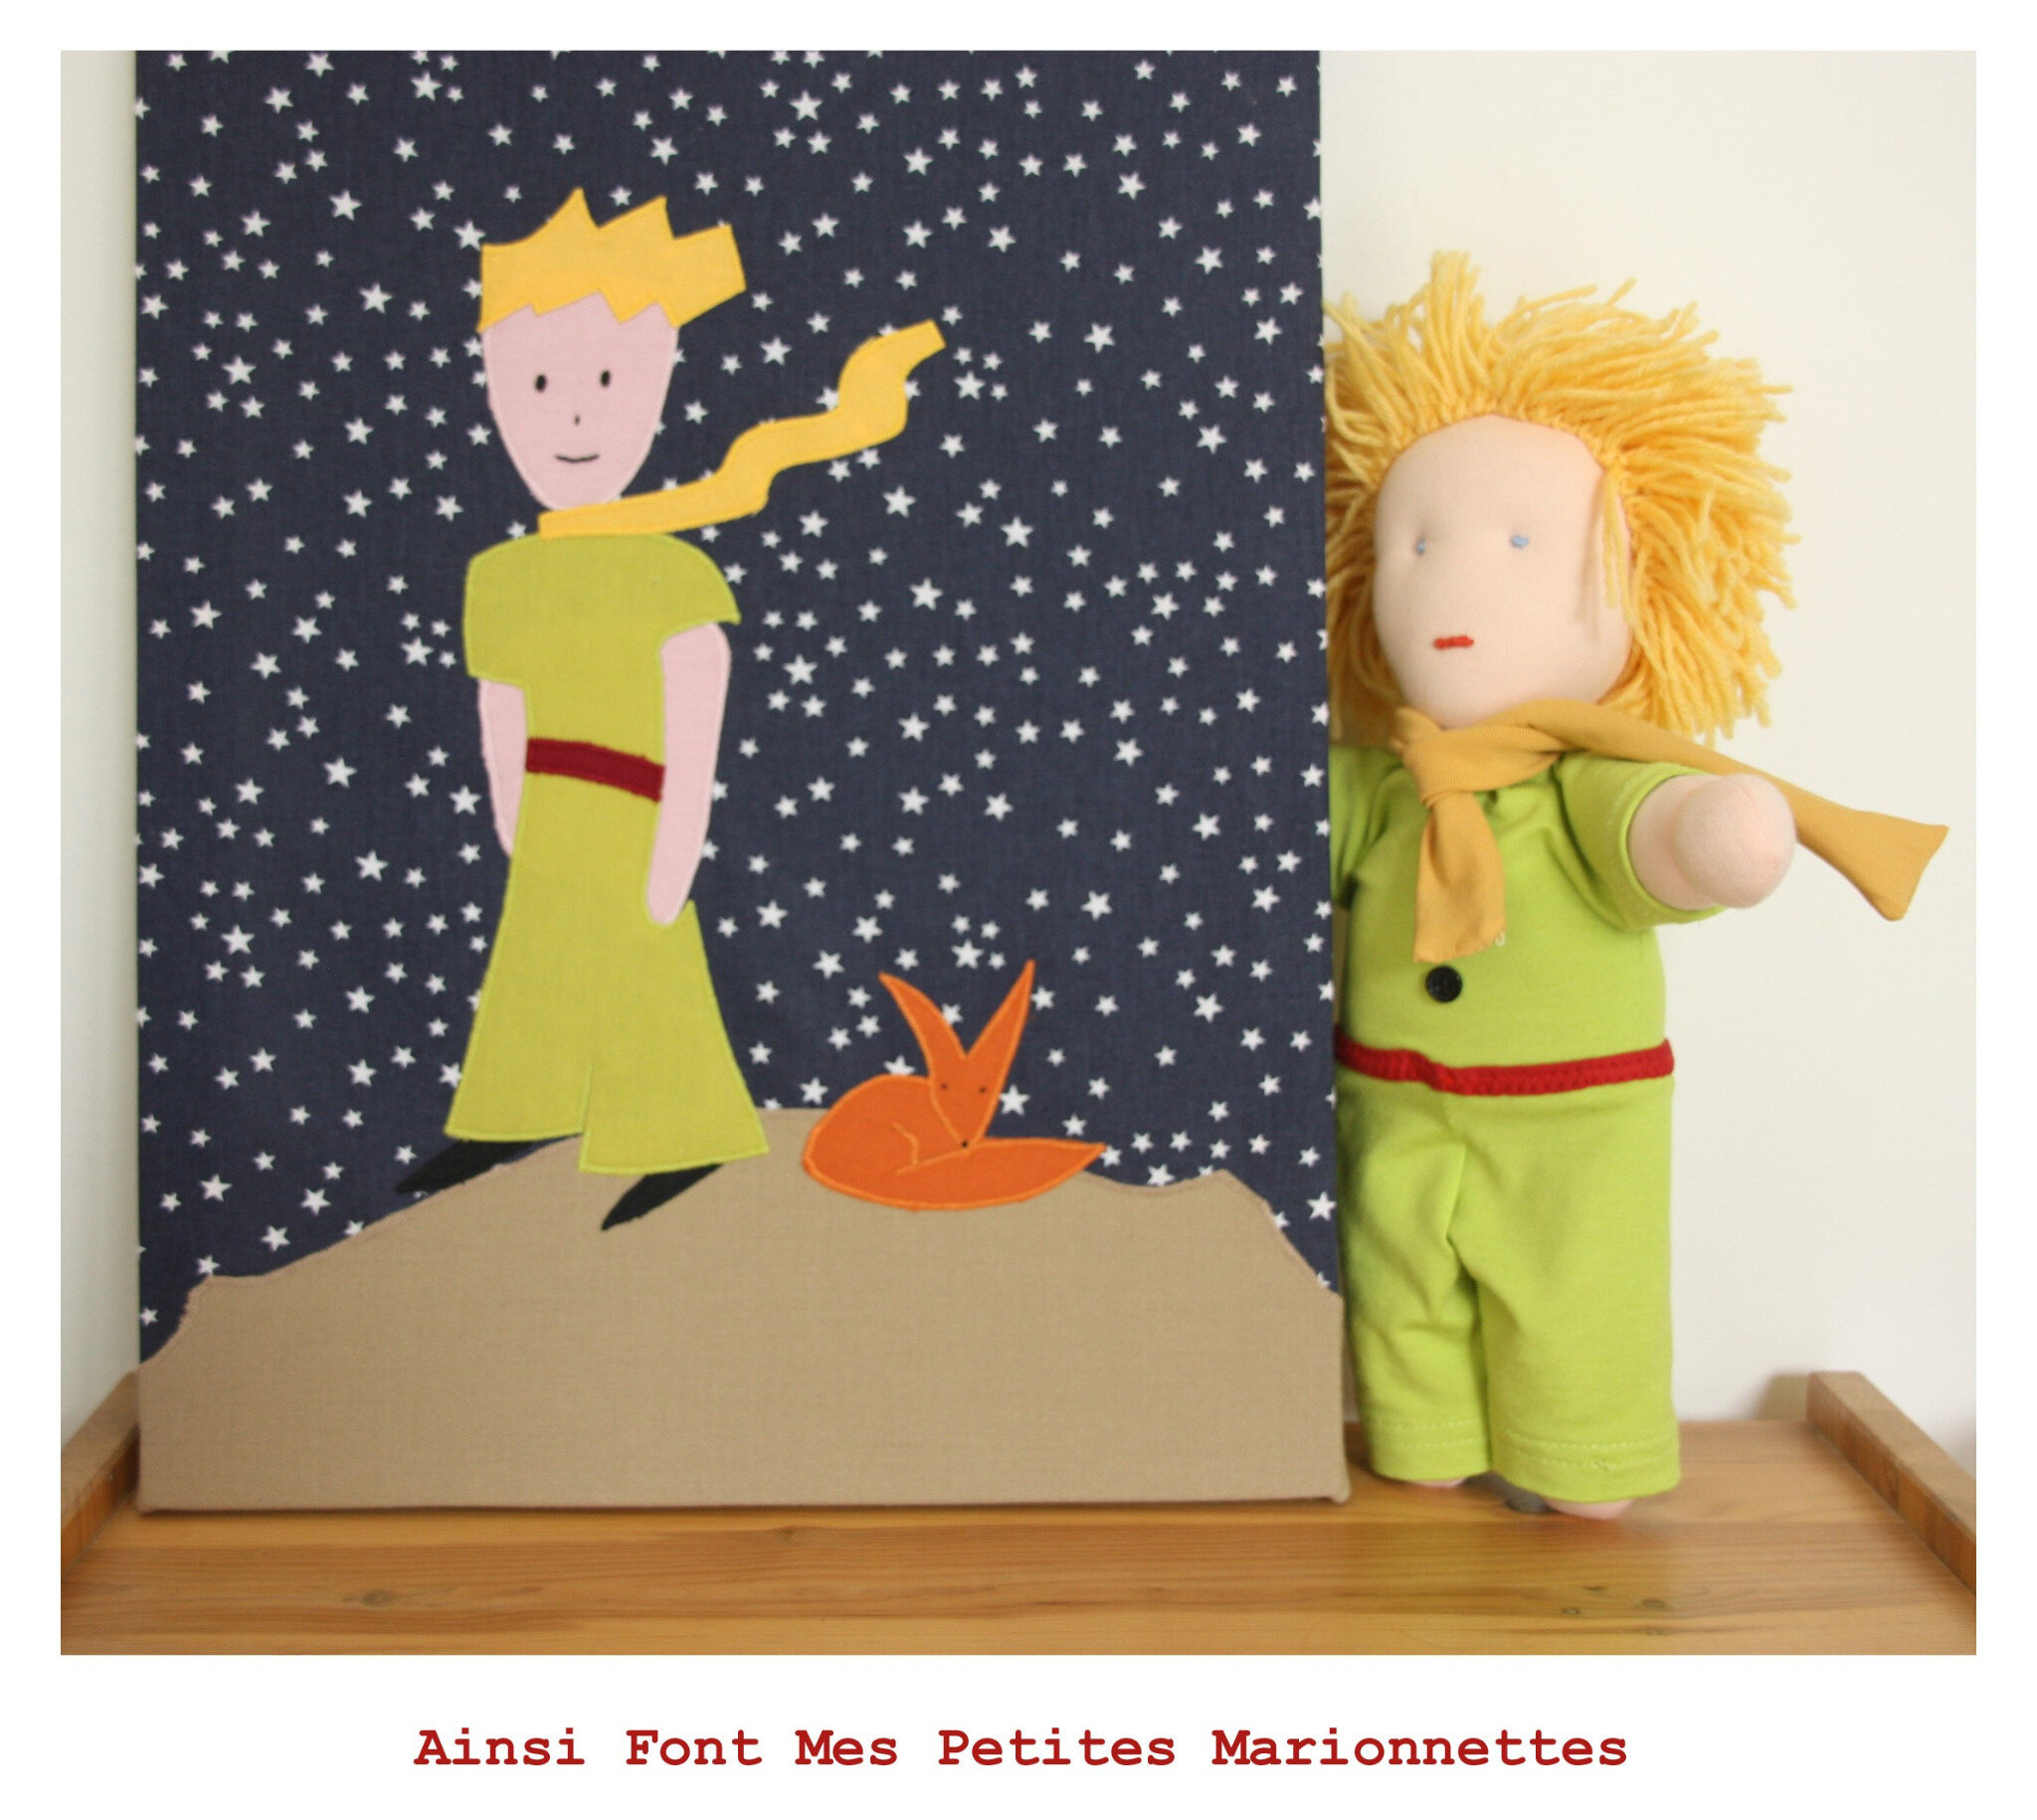 Ainsi Font Mes Petites Marionnettes - Page 1 - Ainsi Font Mes Petites dedans Jeu De Mots 3 Le Petit Prince